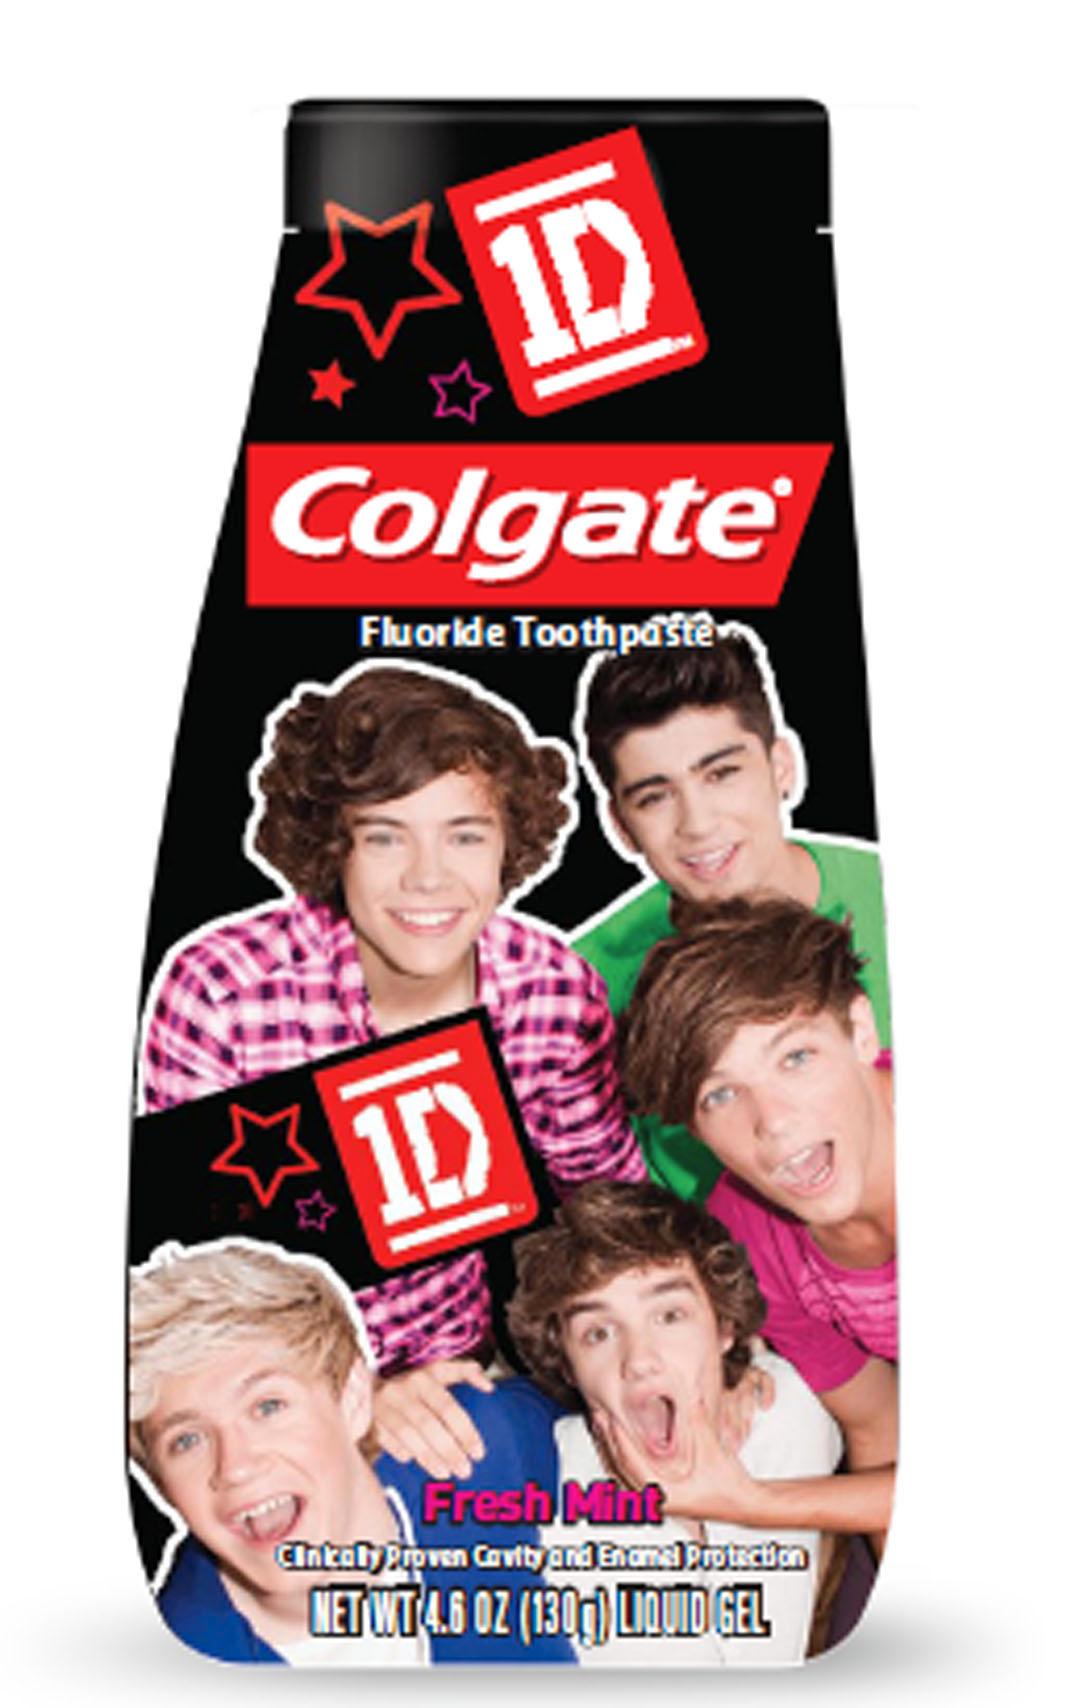 Harrys tandkräm För alla som inte gillar att borsta tänderna men gillar One Direction finns nu ett fullgott alternativ